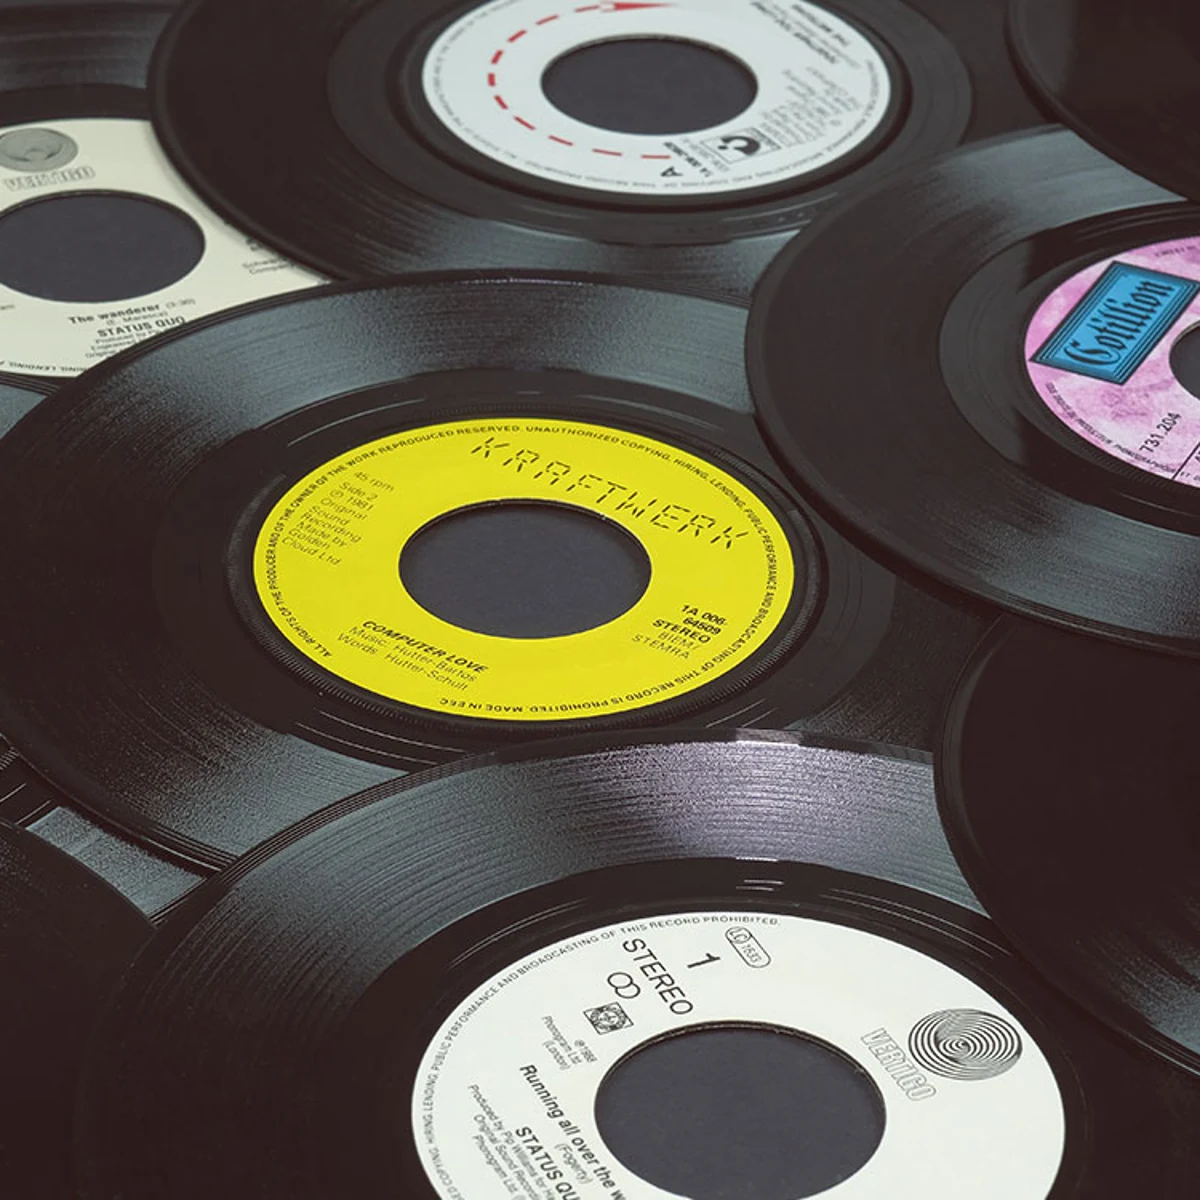 Ventas de vinilos superan a las de CD en más de 30 años, ¿por qué